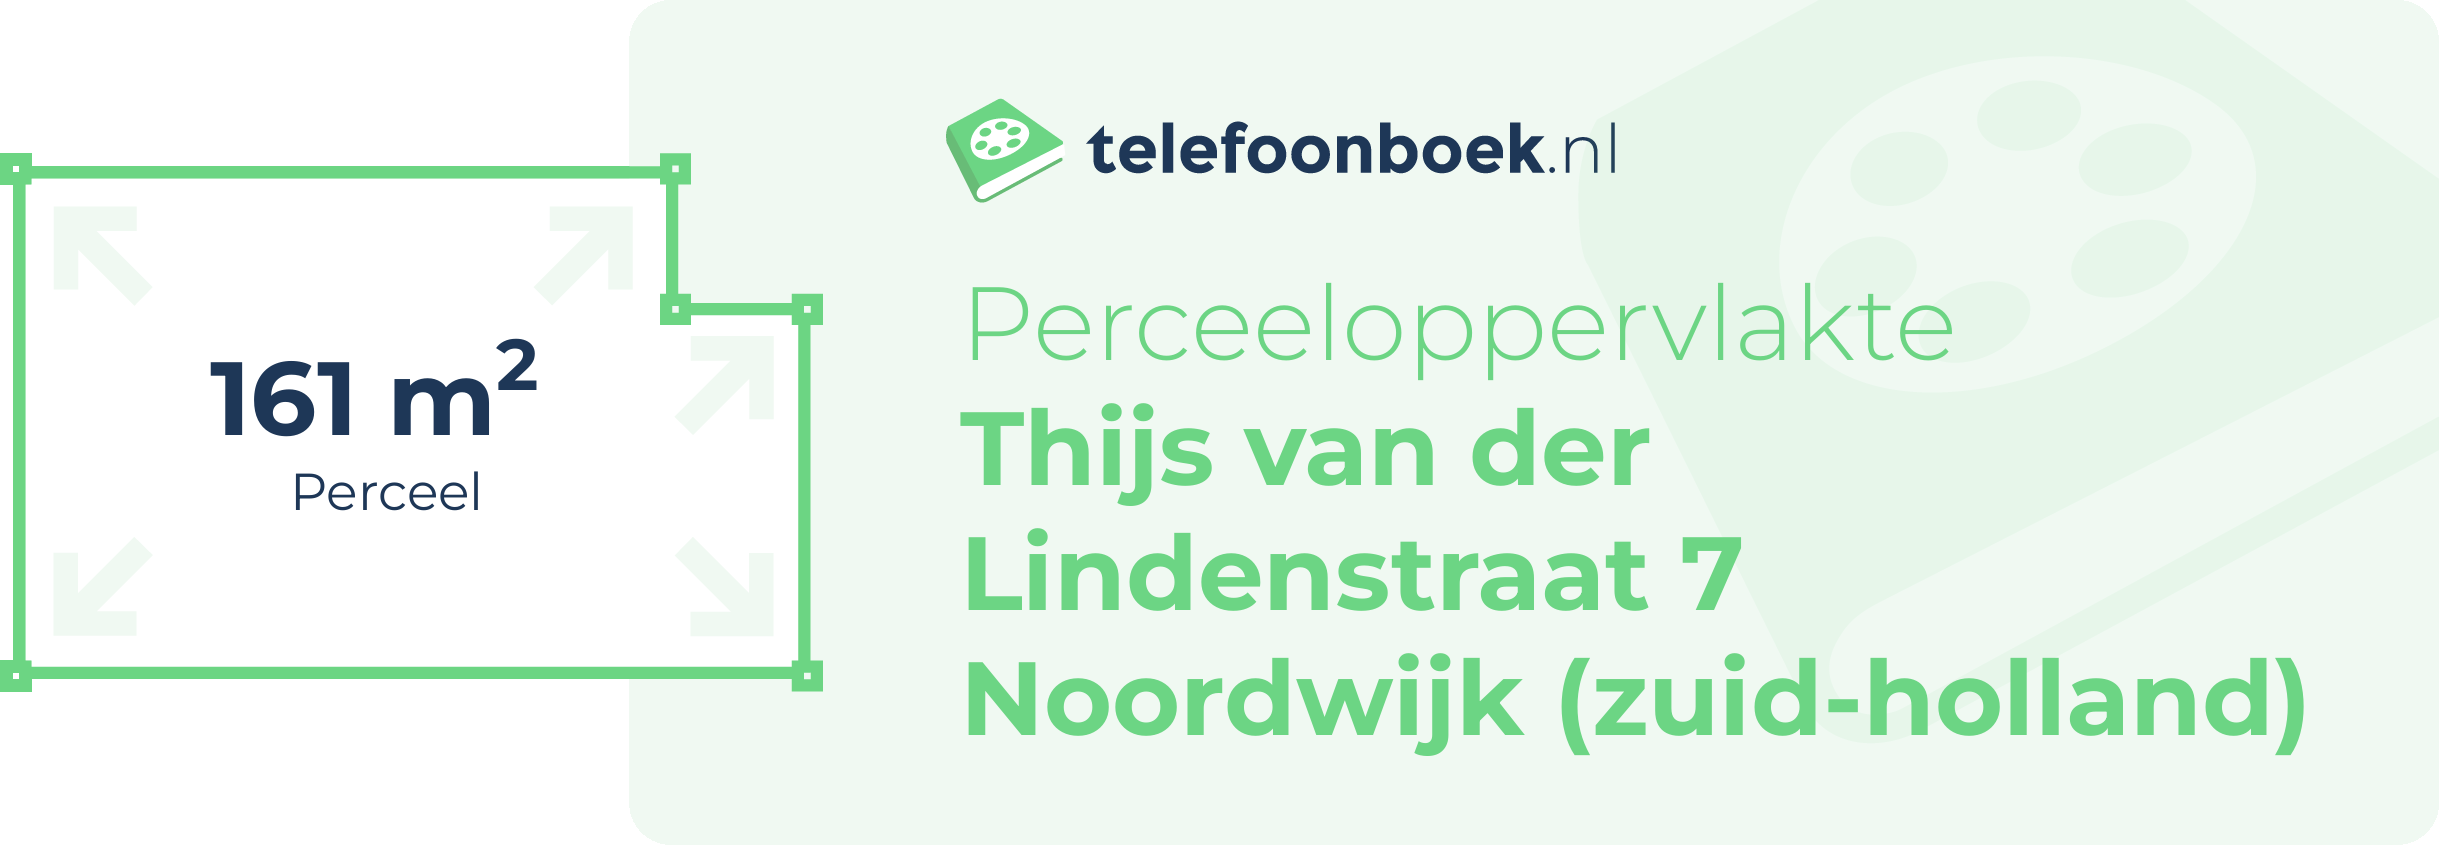 Perceeloppervlakte Thijs Van Der Lindenstraat 7 Noordwijk (Zuid-Holland)